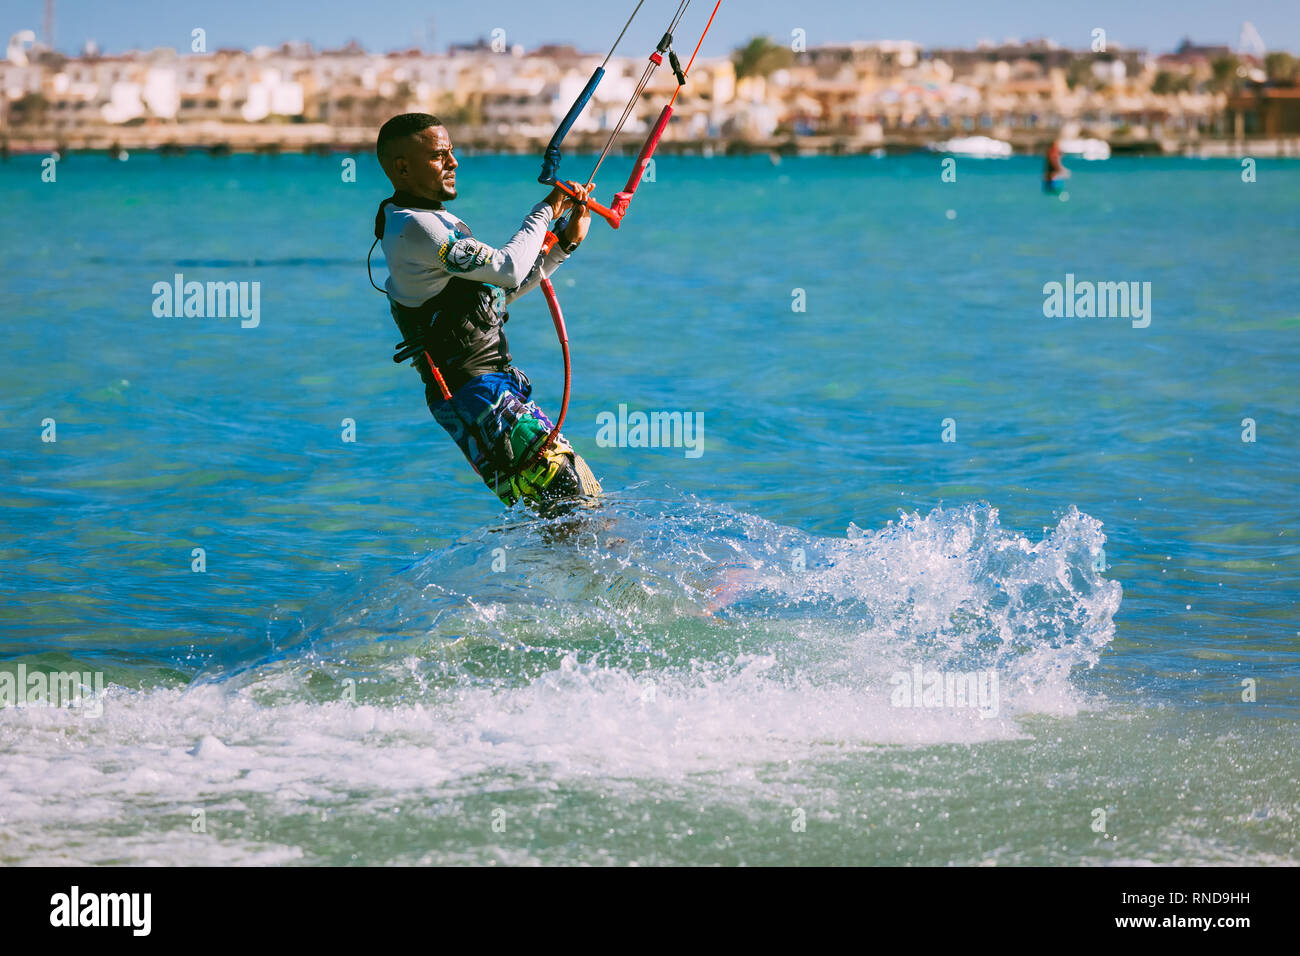 L'Egypte, Hurghada - 30 novembre, 2017:Le kitesurfer glisse sur les vagues de la mer Rouge. L'eau de plein air les activités sportives. Attraction touristique populaire. La casserole Banque D'Images